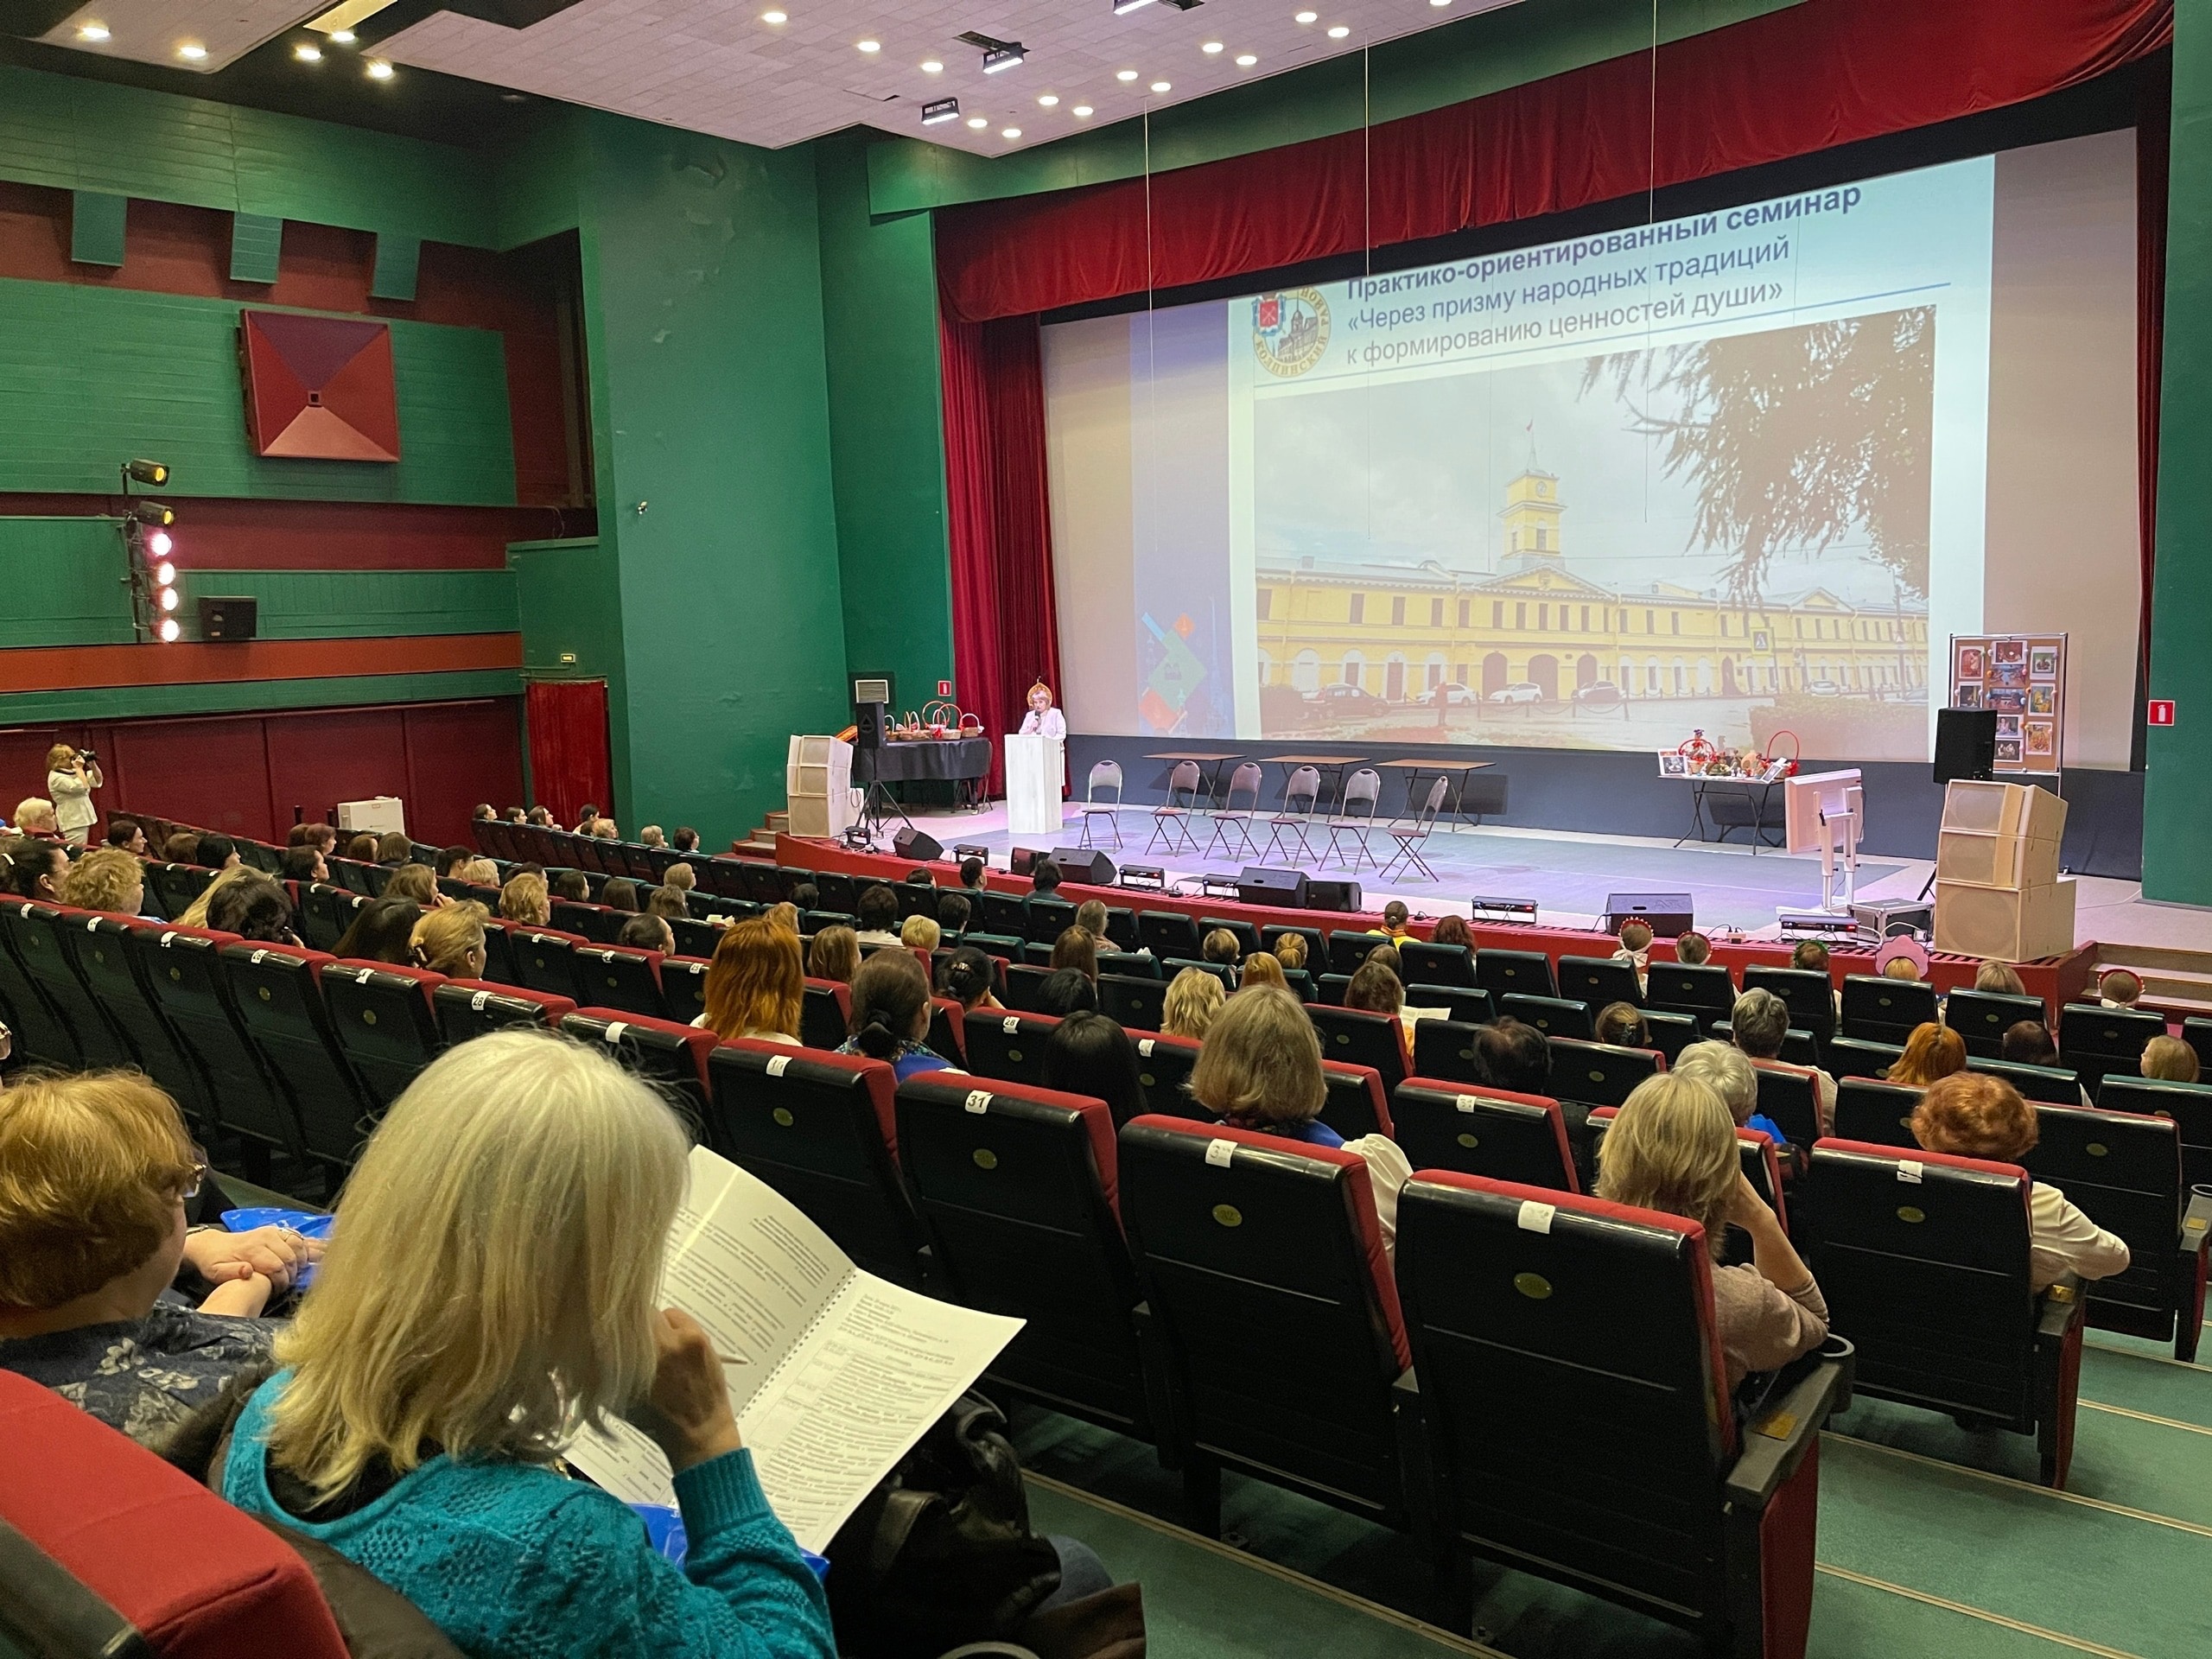 Культурно-досуговый центр "Подвиг" принимает участников XIII Петербургского международного образовательного форума.